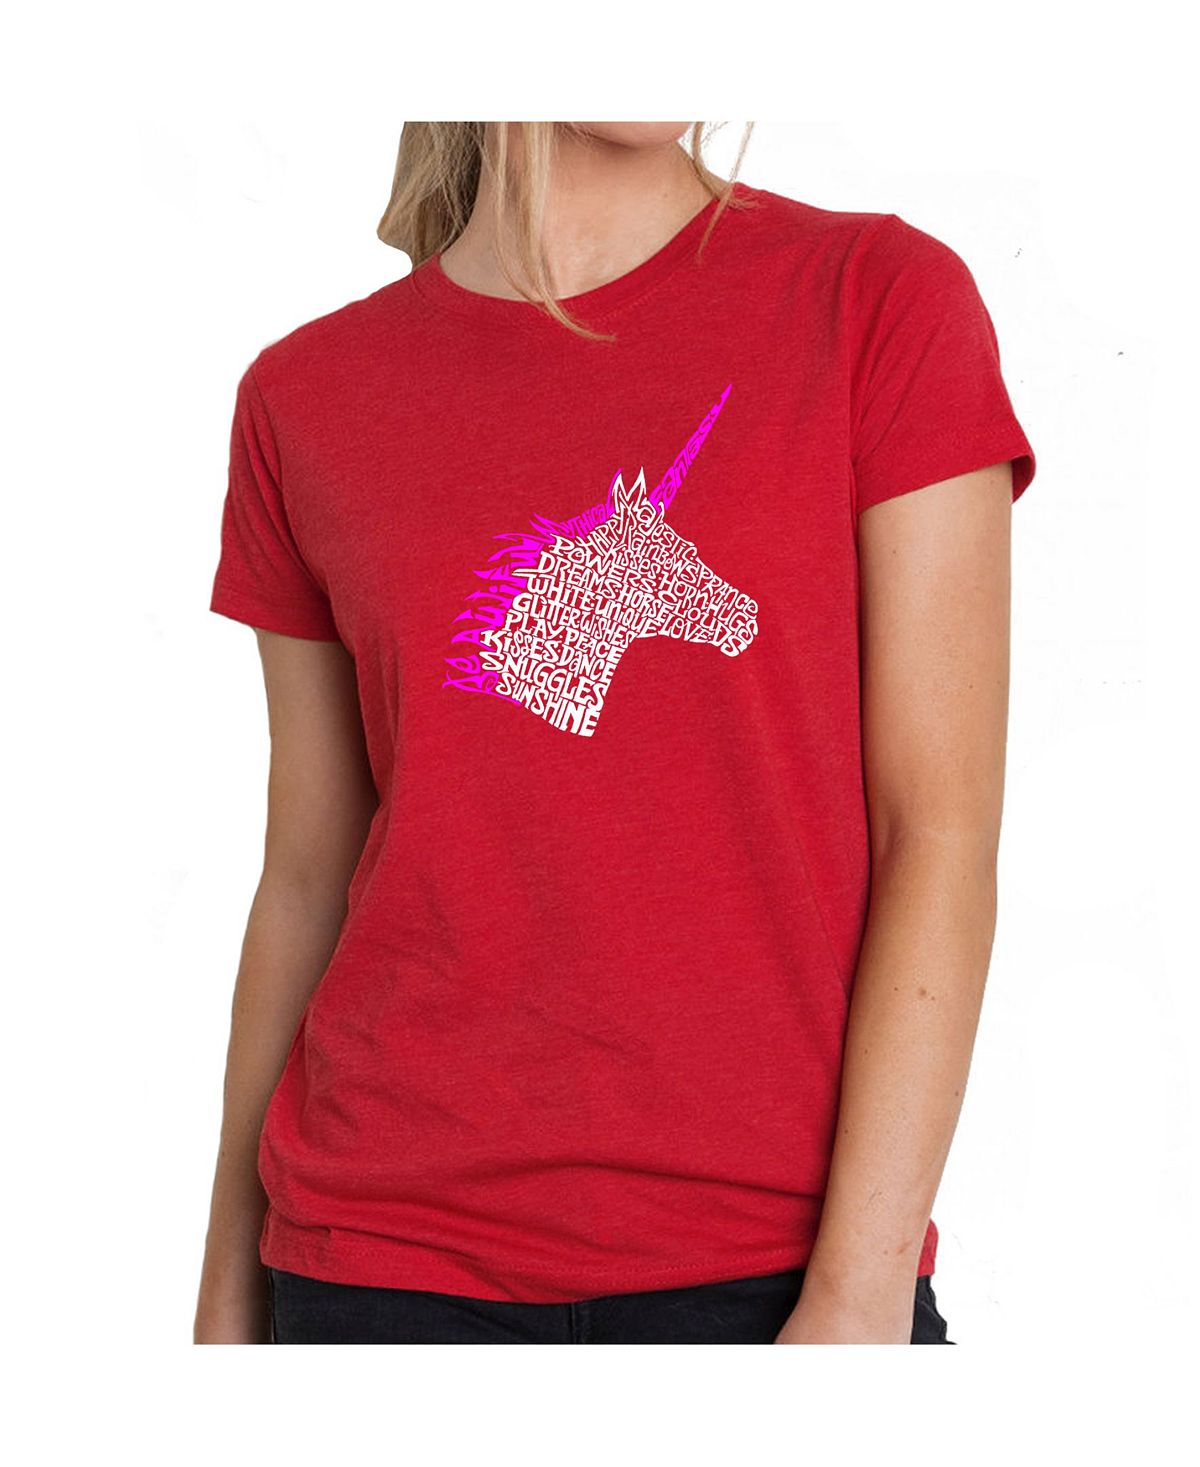 Женская футболка premium word art - unicorn LA Pop Art, красный